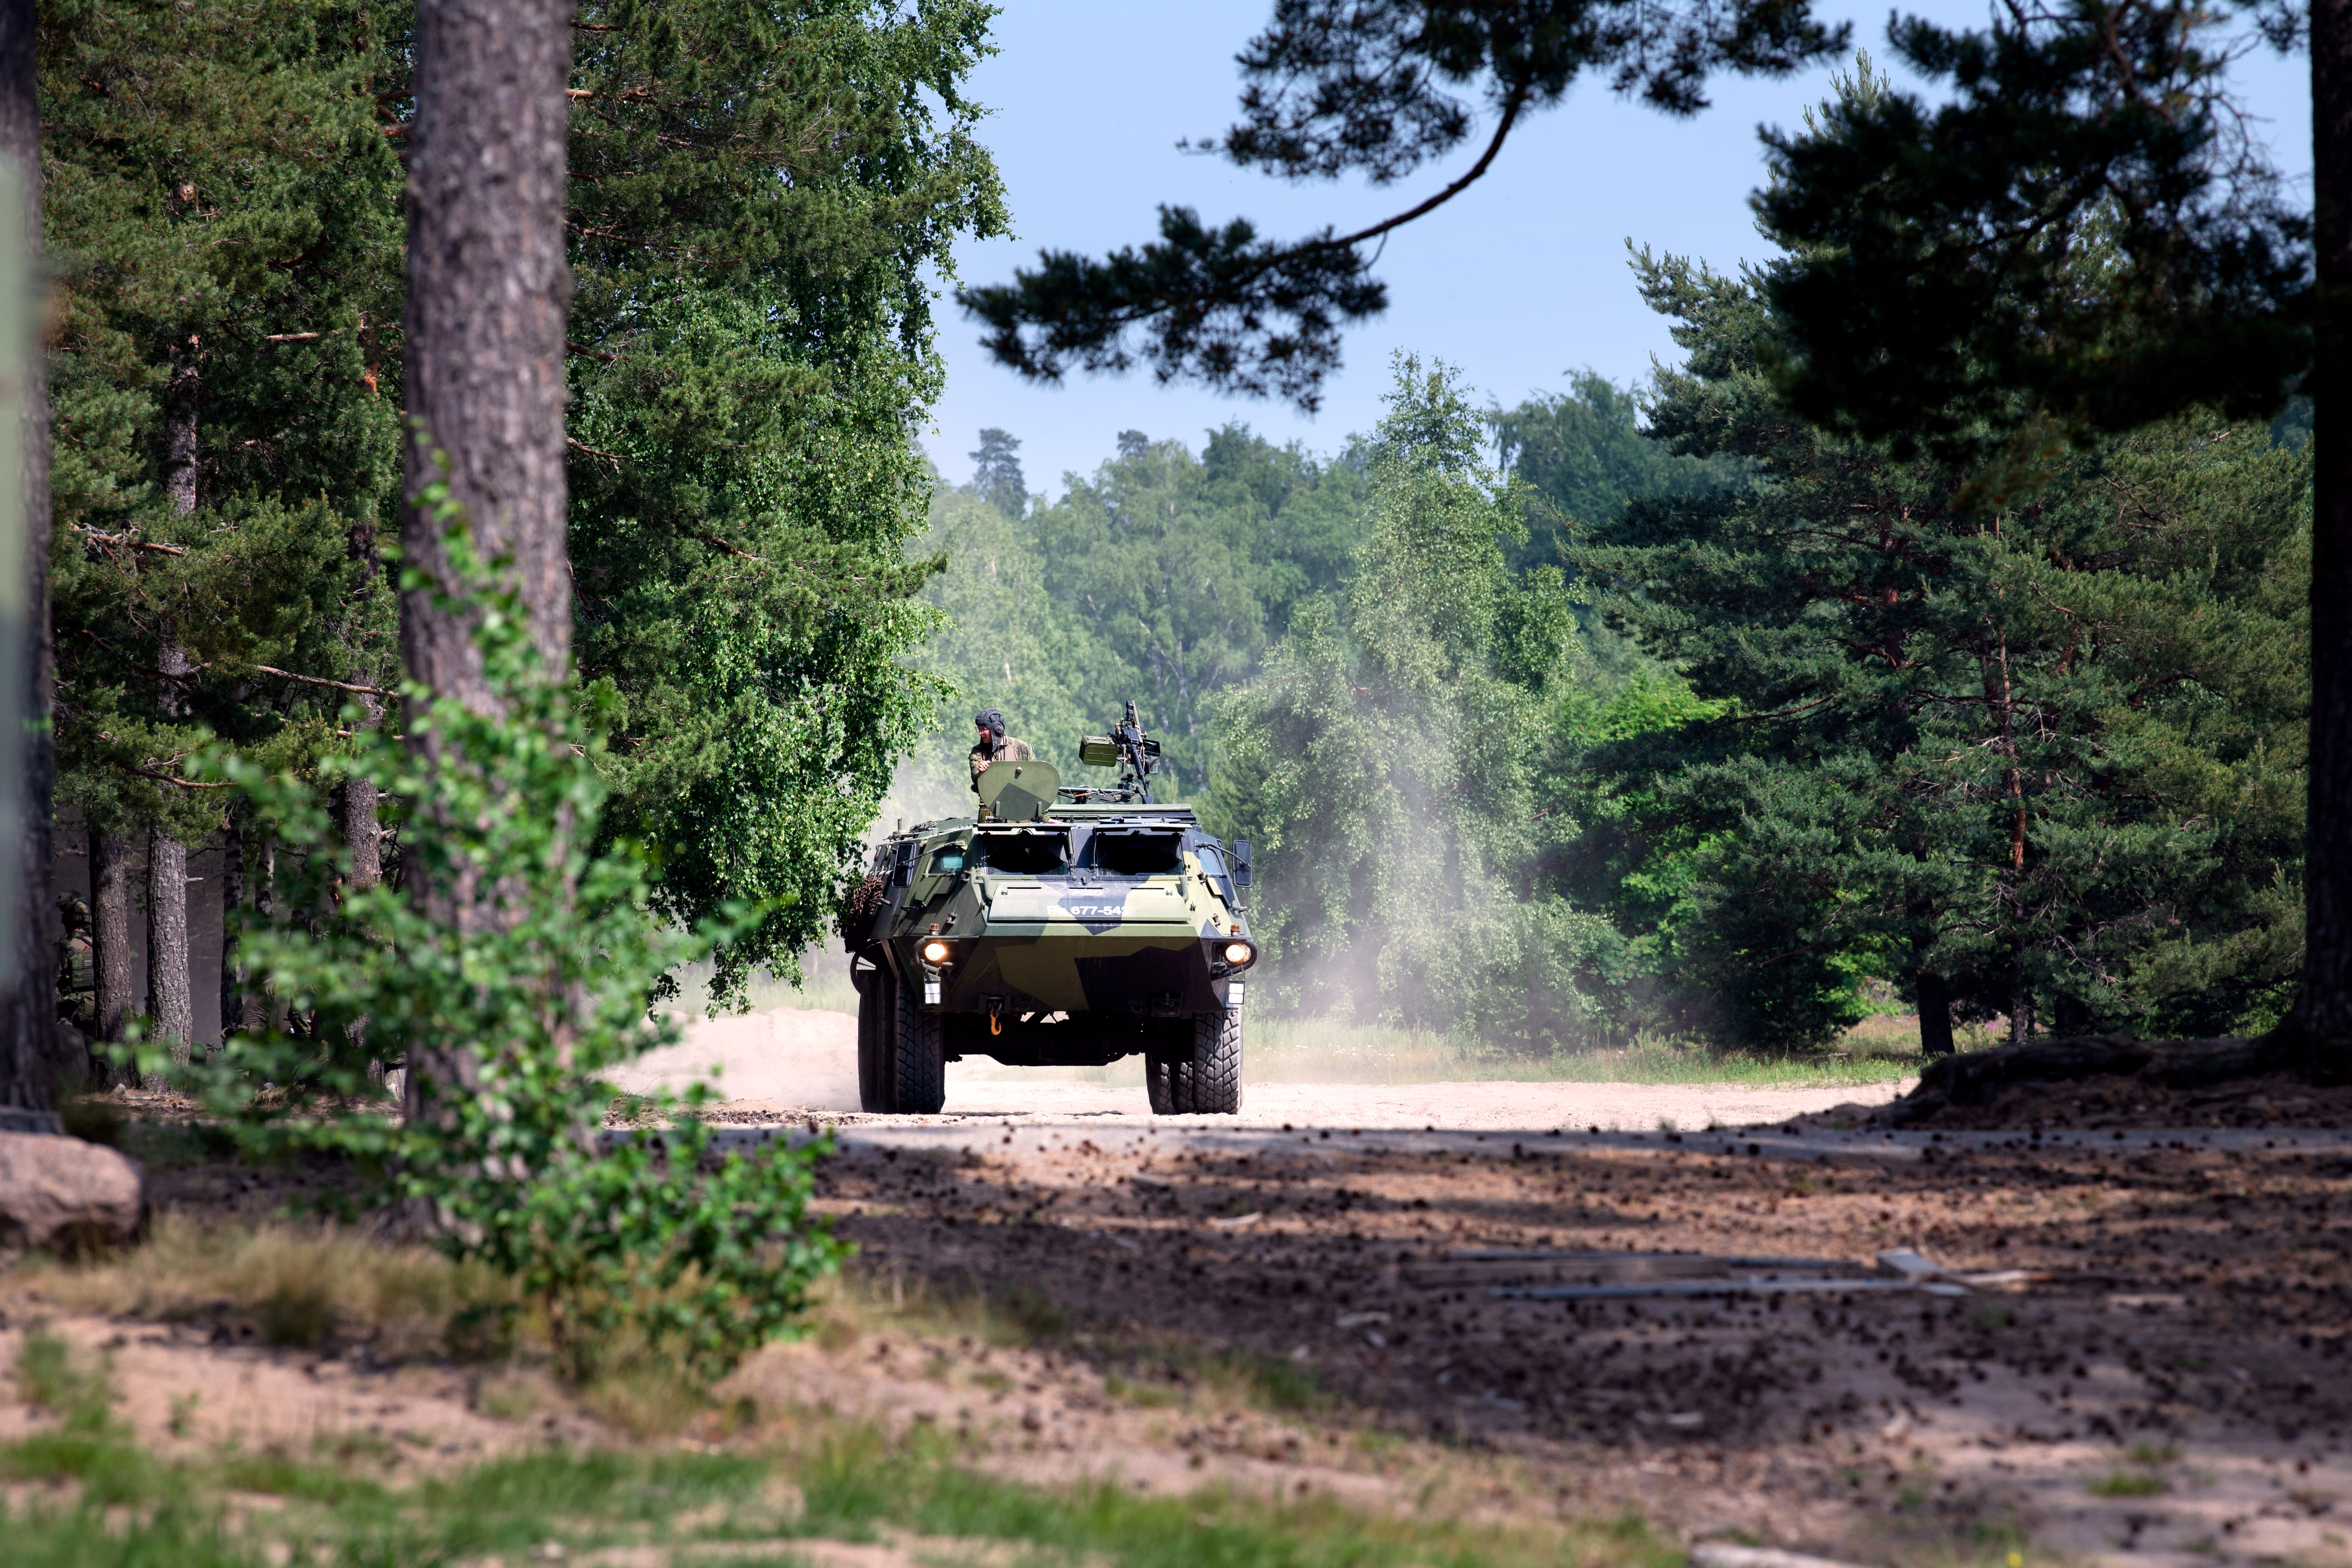 تدريبات عسكرية حول فنلندا في نهاية هذا الأسبوع عندما تزور سفن حربية تابعة لحلف الناتو هلسنكي